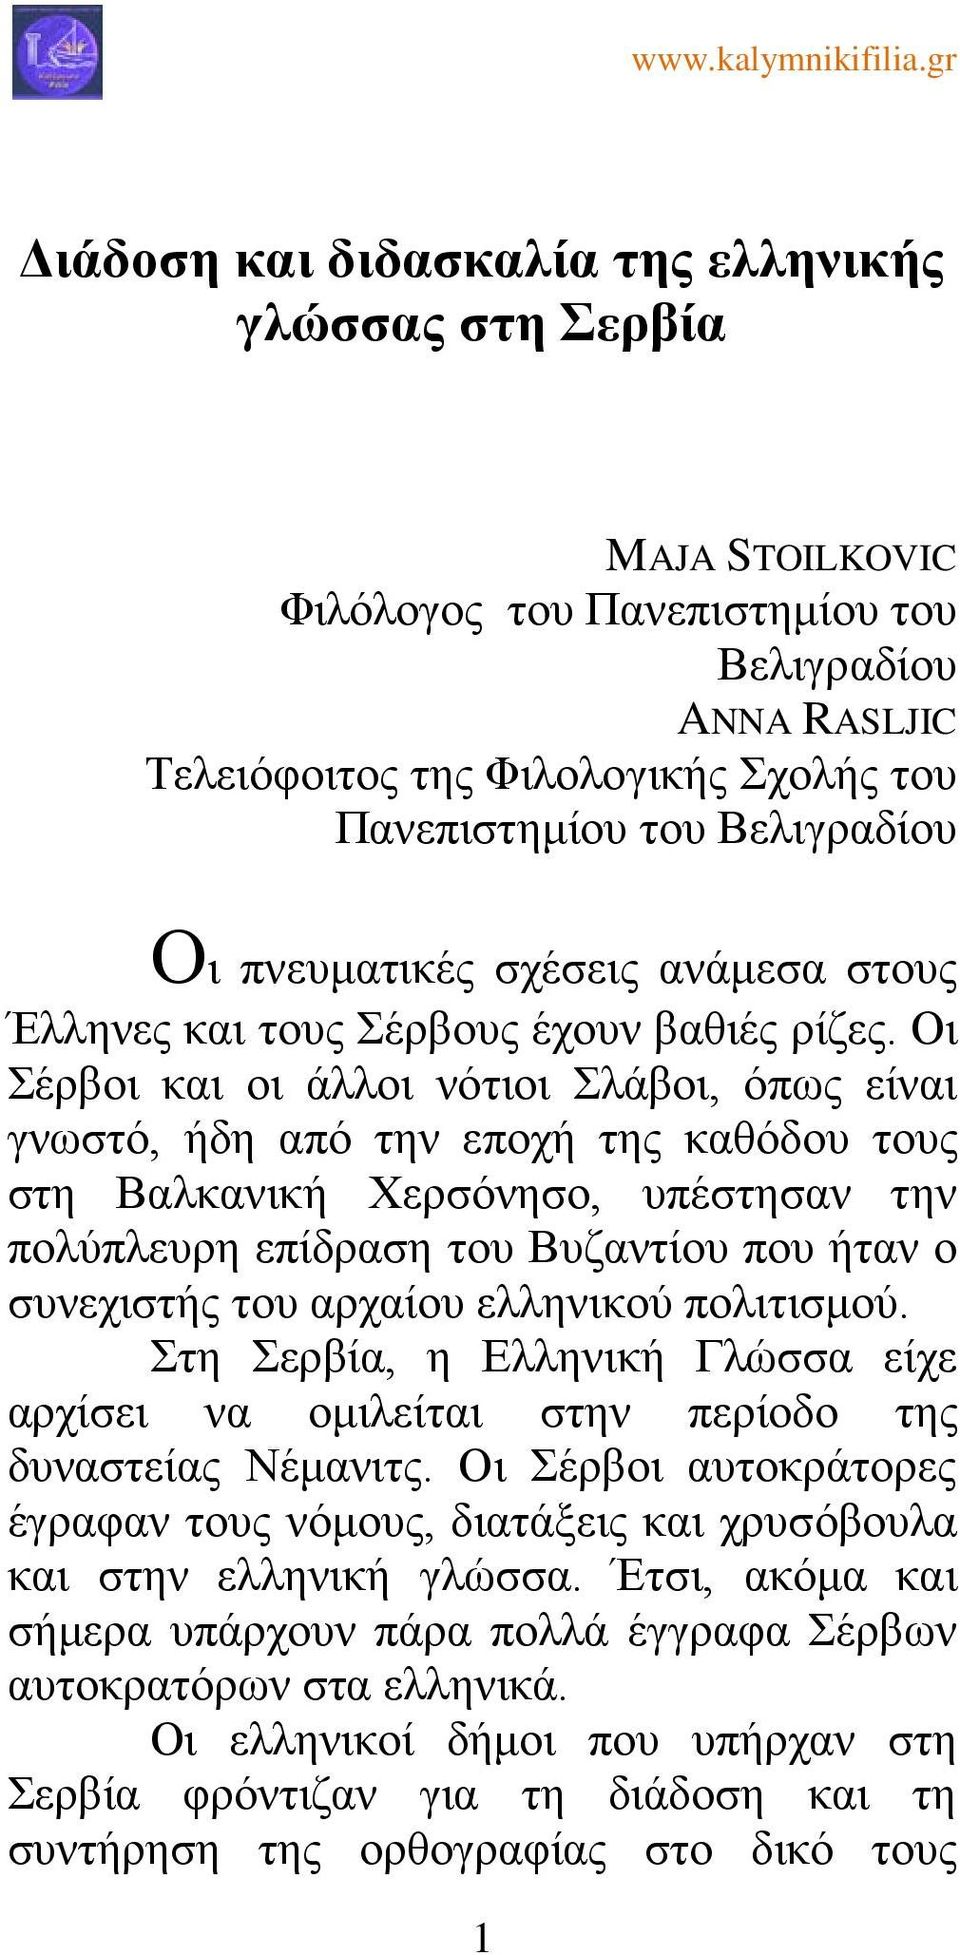 Οι Σέρβοι και οι άλλοι νότιοι Σλάβοι, όπως είναι γνωστό, ήδη από την εποχή της καθόδου τους στη Βαλκανική Χερσόνησο, υπέστησαν την πολύπλευρη επίδραση του Βυζαντίου που ήταν ο συνεχιστής του αρχαίου